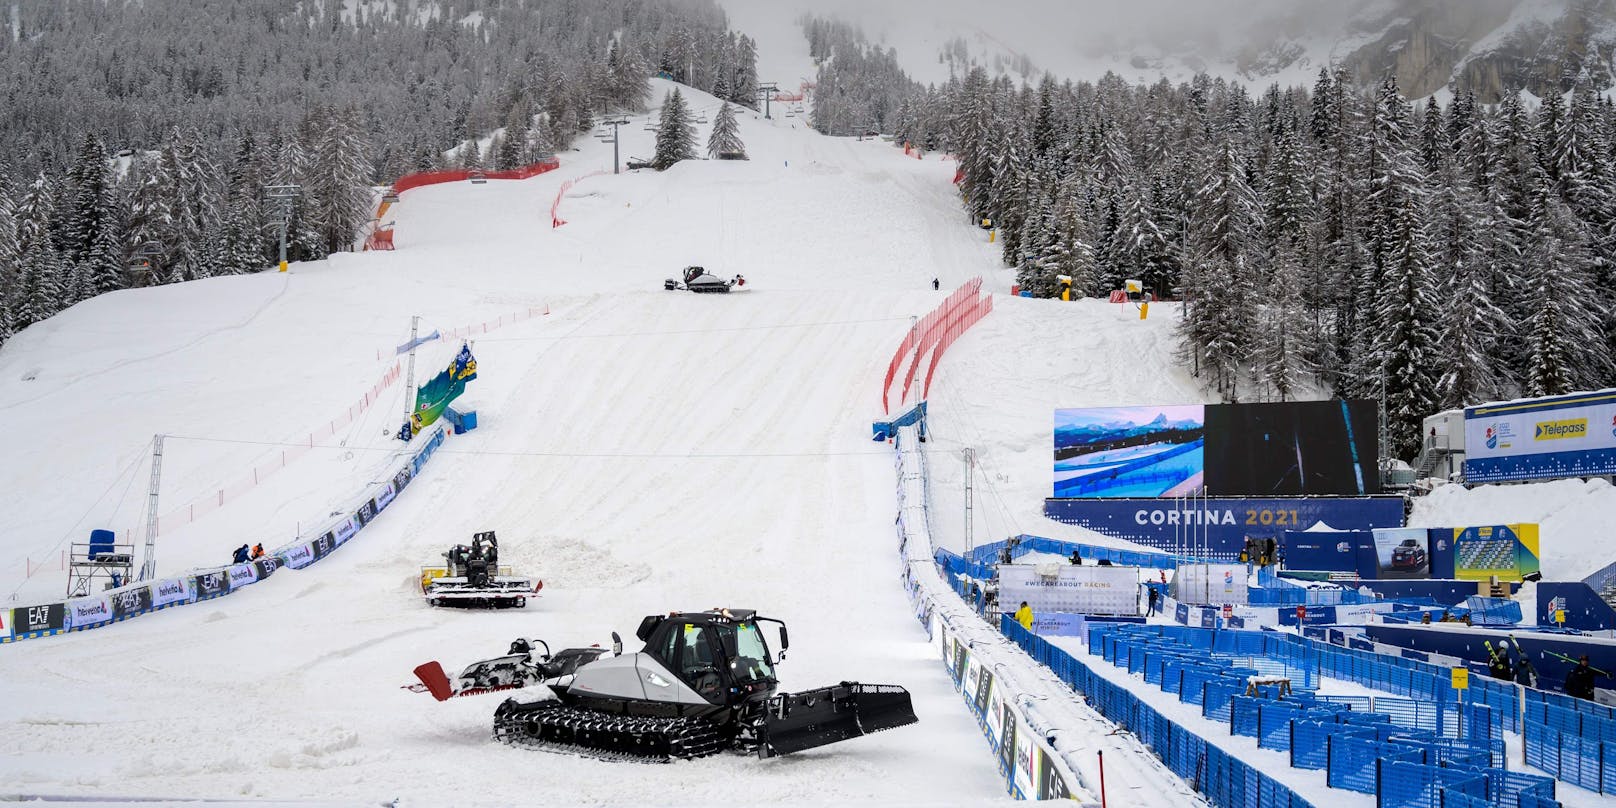 Starker Schneefall sorgt in Cortina für die erste Absage.